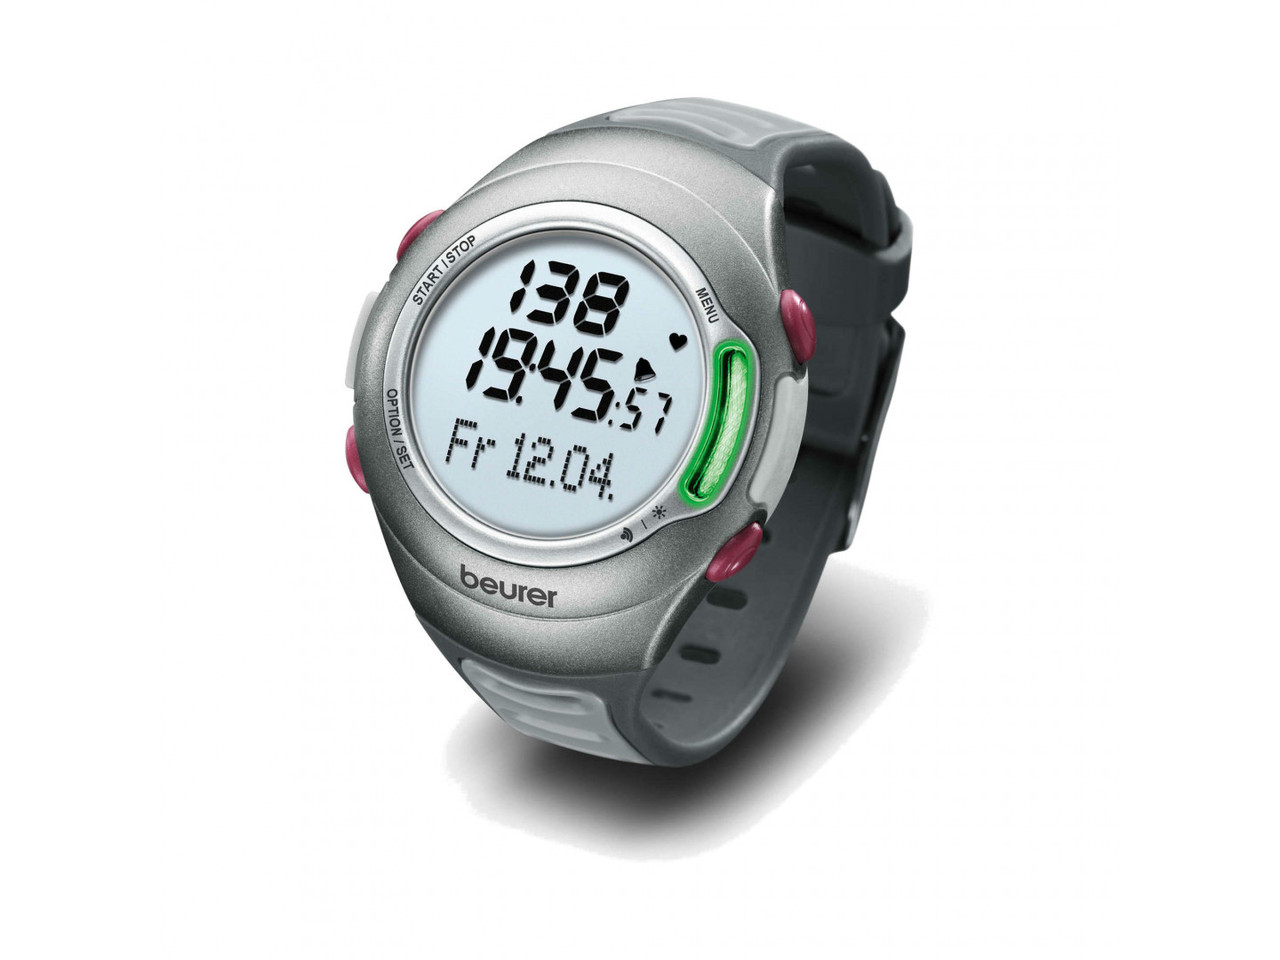 Пульсометр PM 70 Beurer часы для спорта бега на руку (пульсометры)